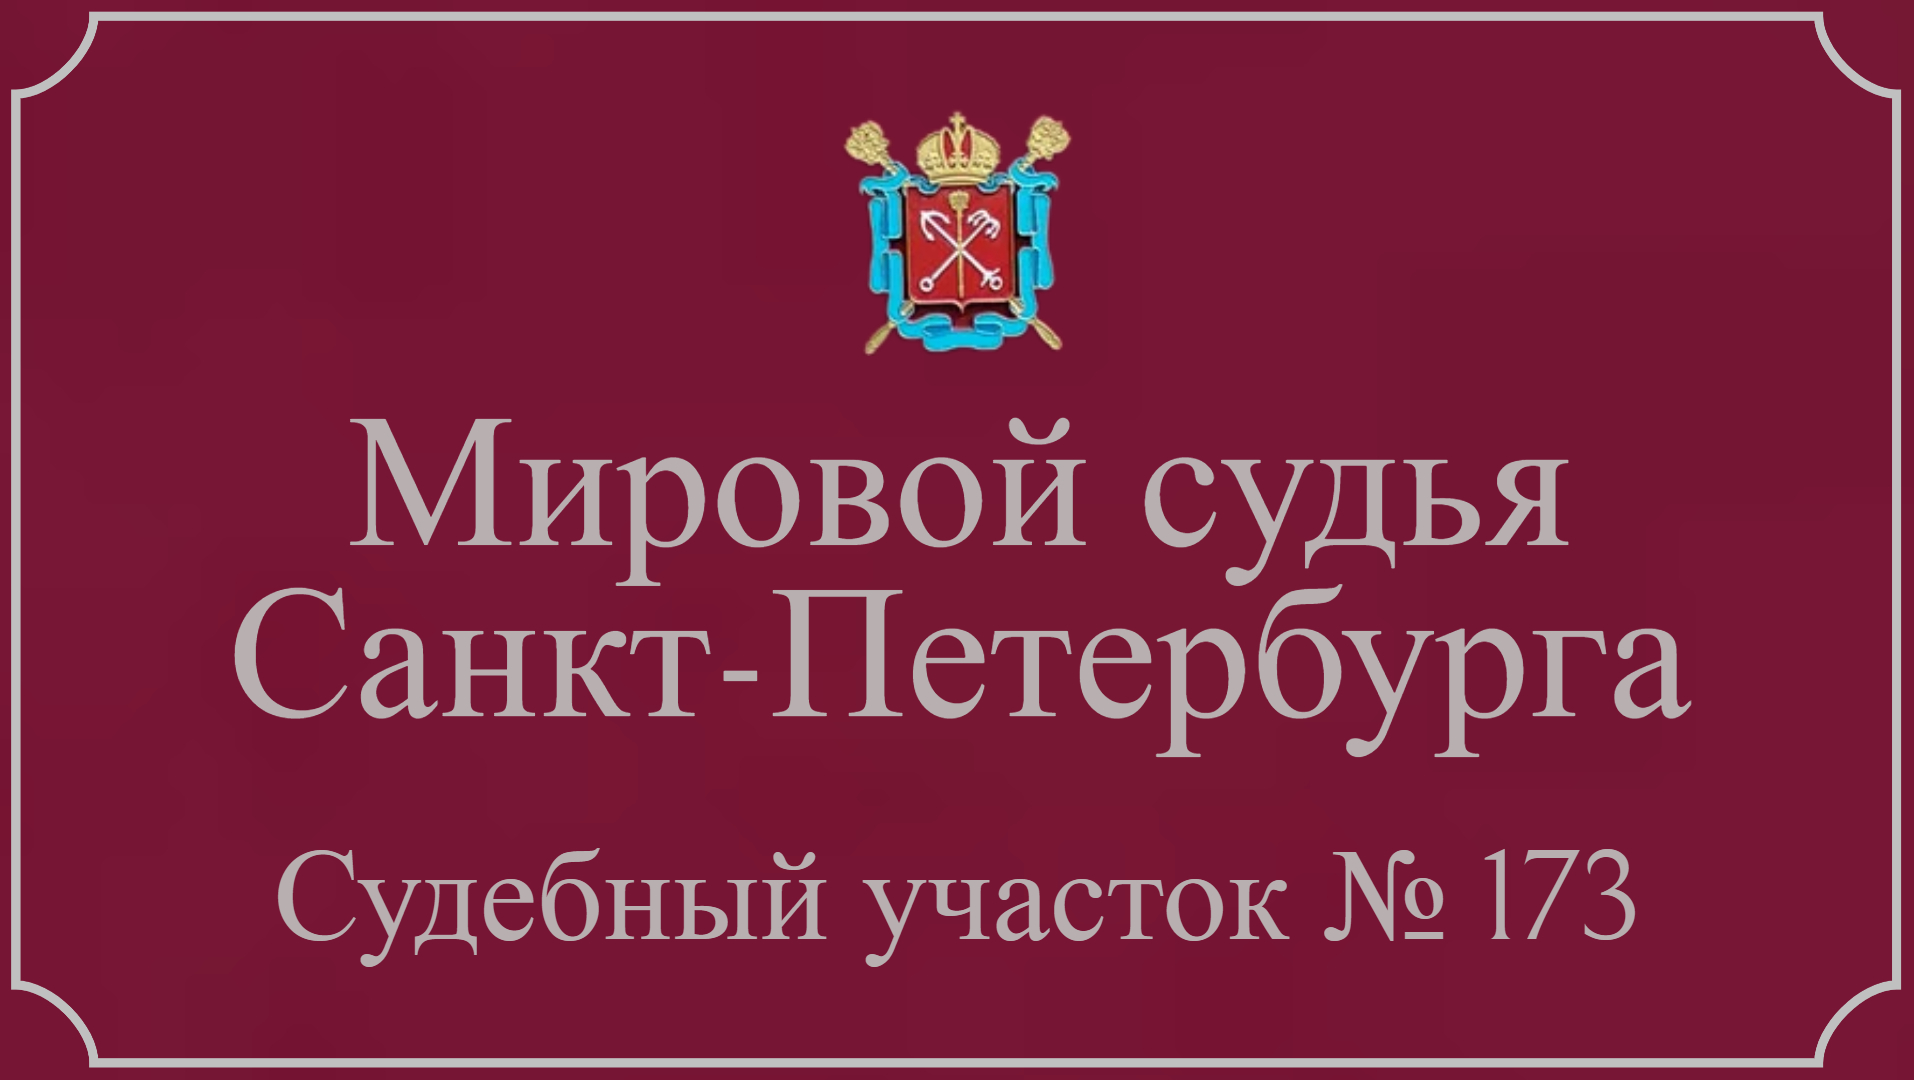 Информация по 173 судебному участку в Санкт-Петербурге.